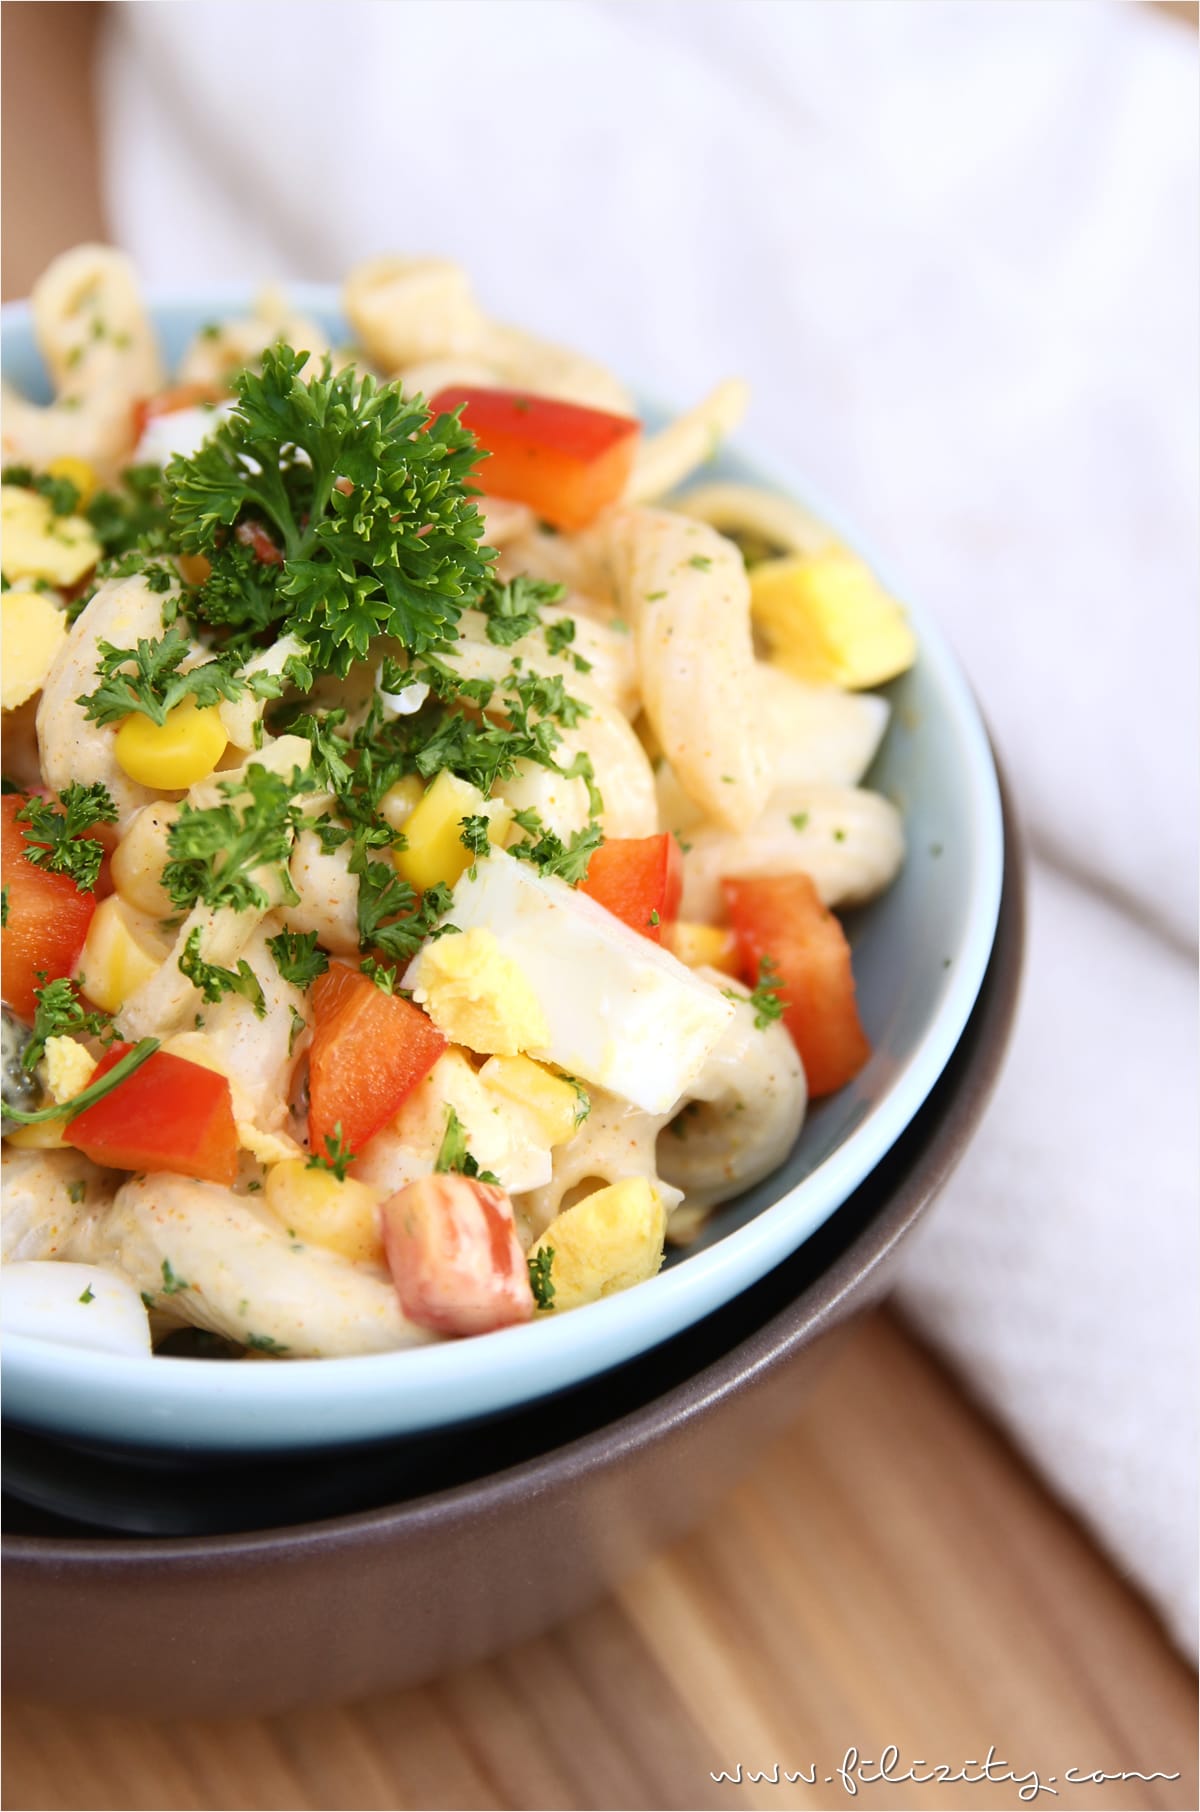 Nudelsalat mit Curry als Partyfood oder Beilage zum Grillen | Filizity.com | Food-Blog aus dem Rheinland #partyfood #salat #silvester #nye